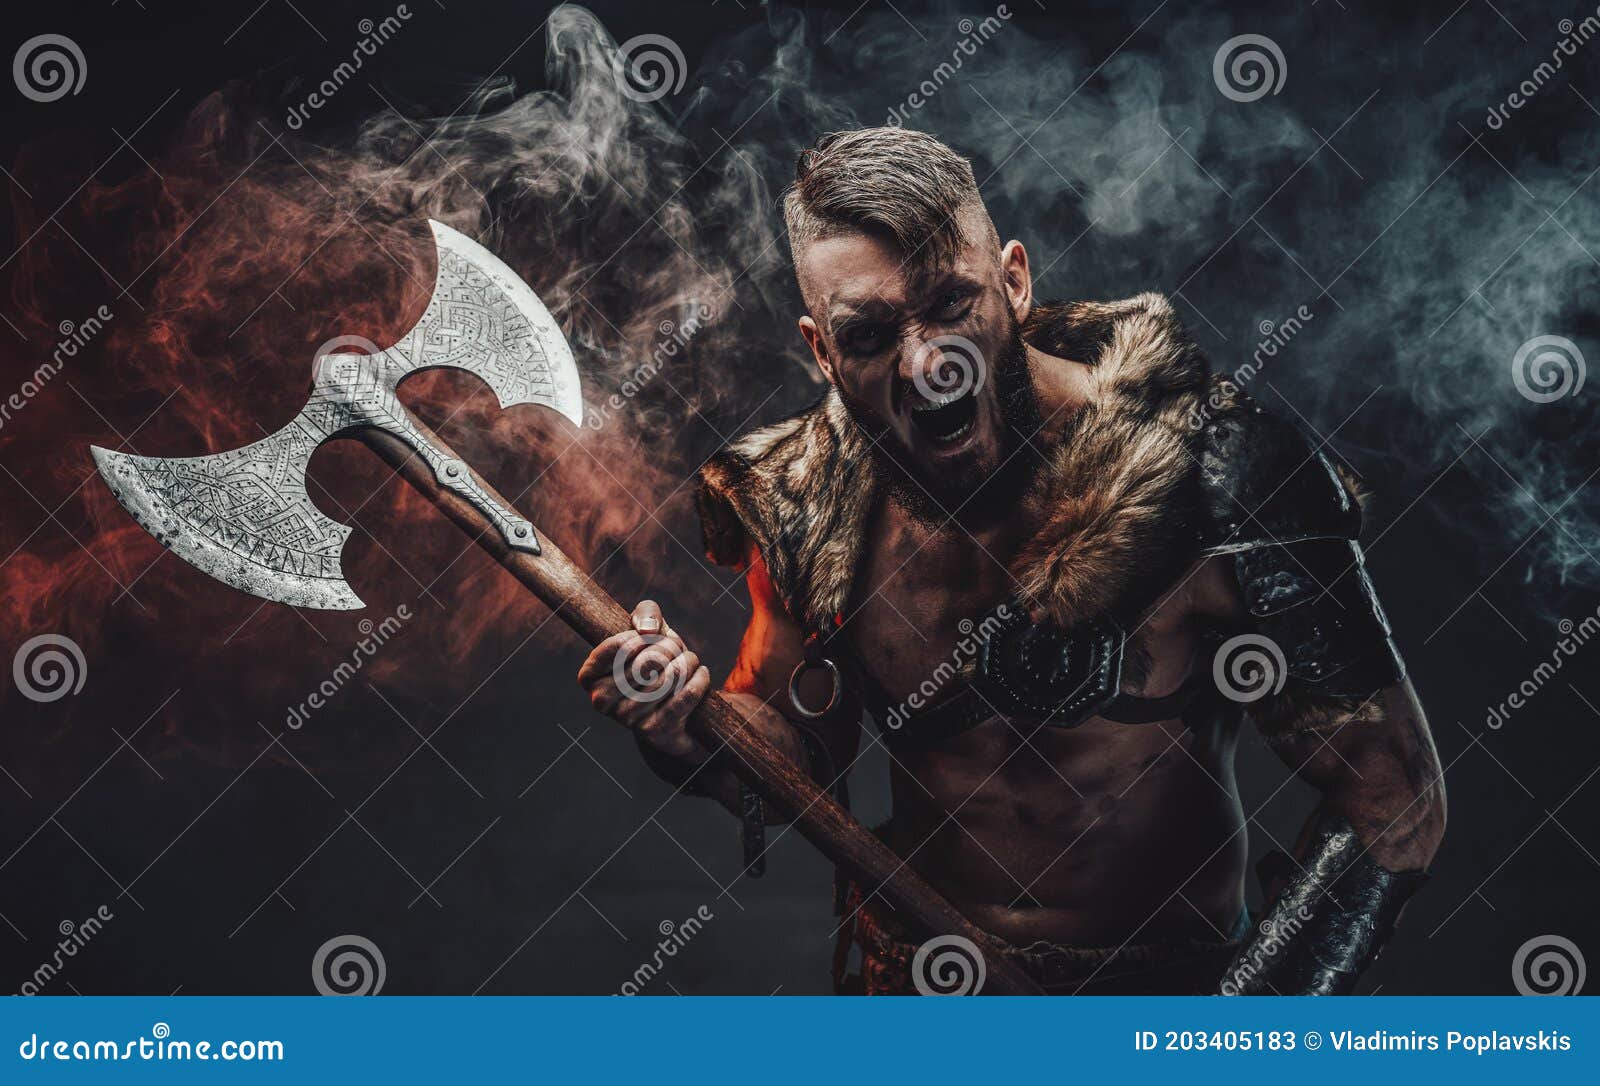 Screaming Scandinavian Warrior with Huge Axe in Fog Stock Image - Image ...